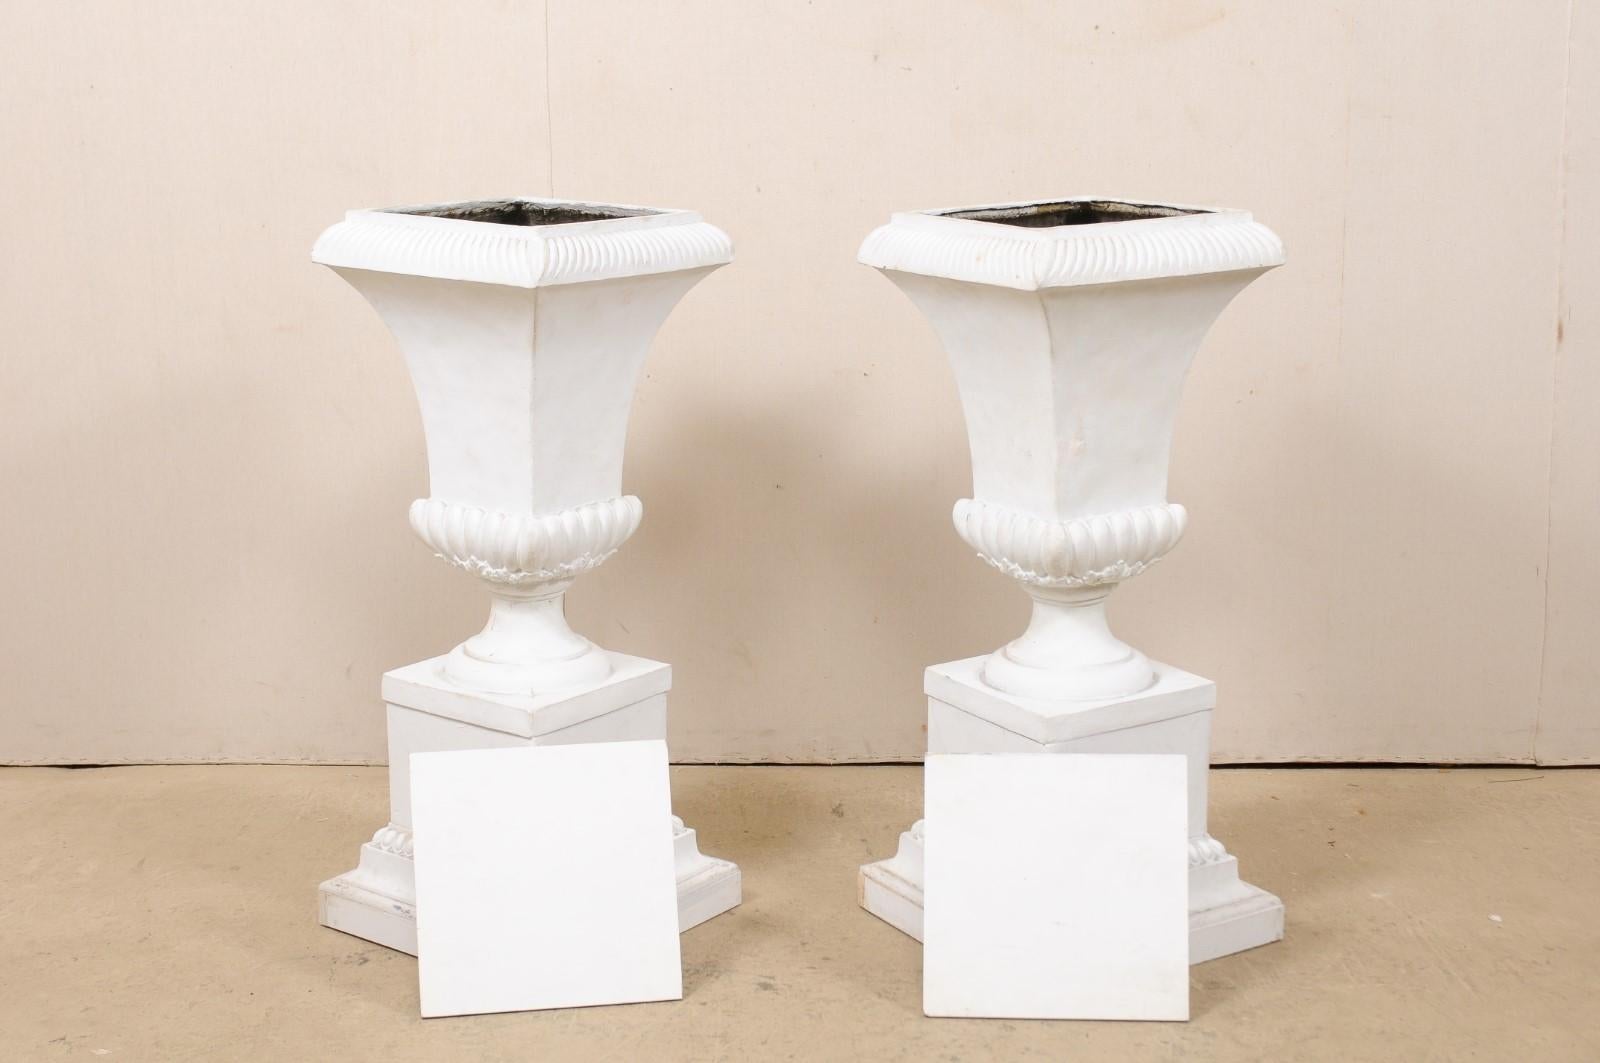 Pair of Fiberglass Urn-Shaped Pedestals, Standing 3